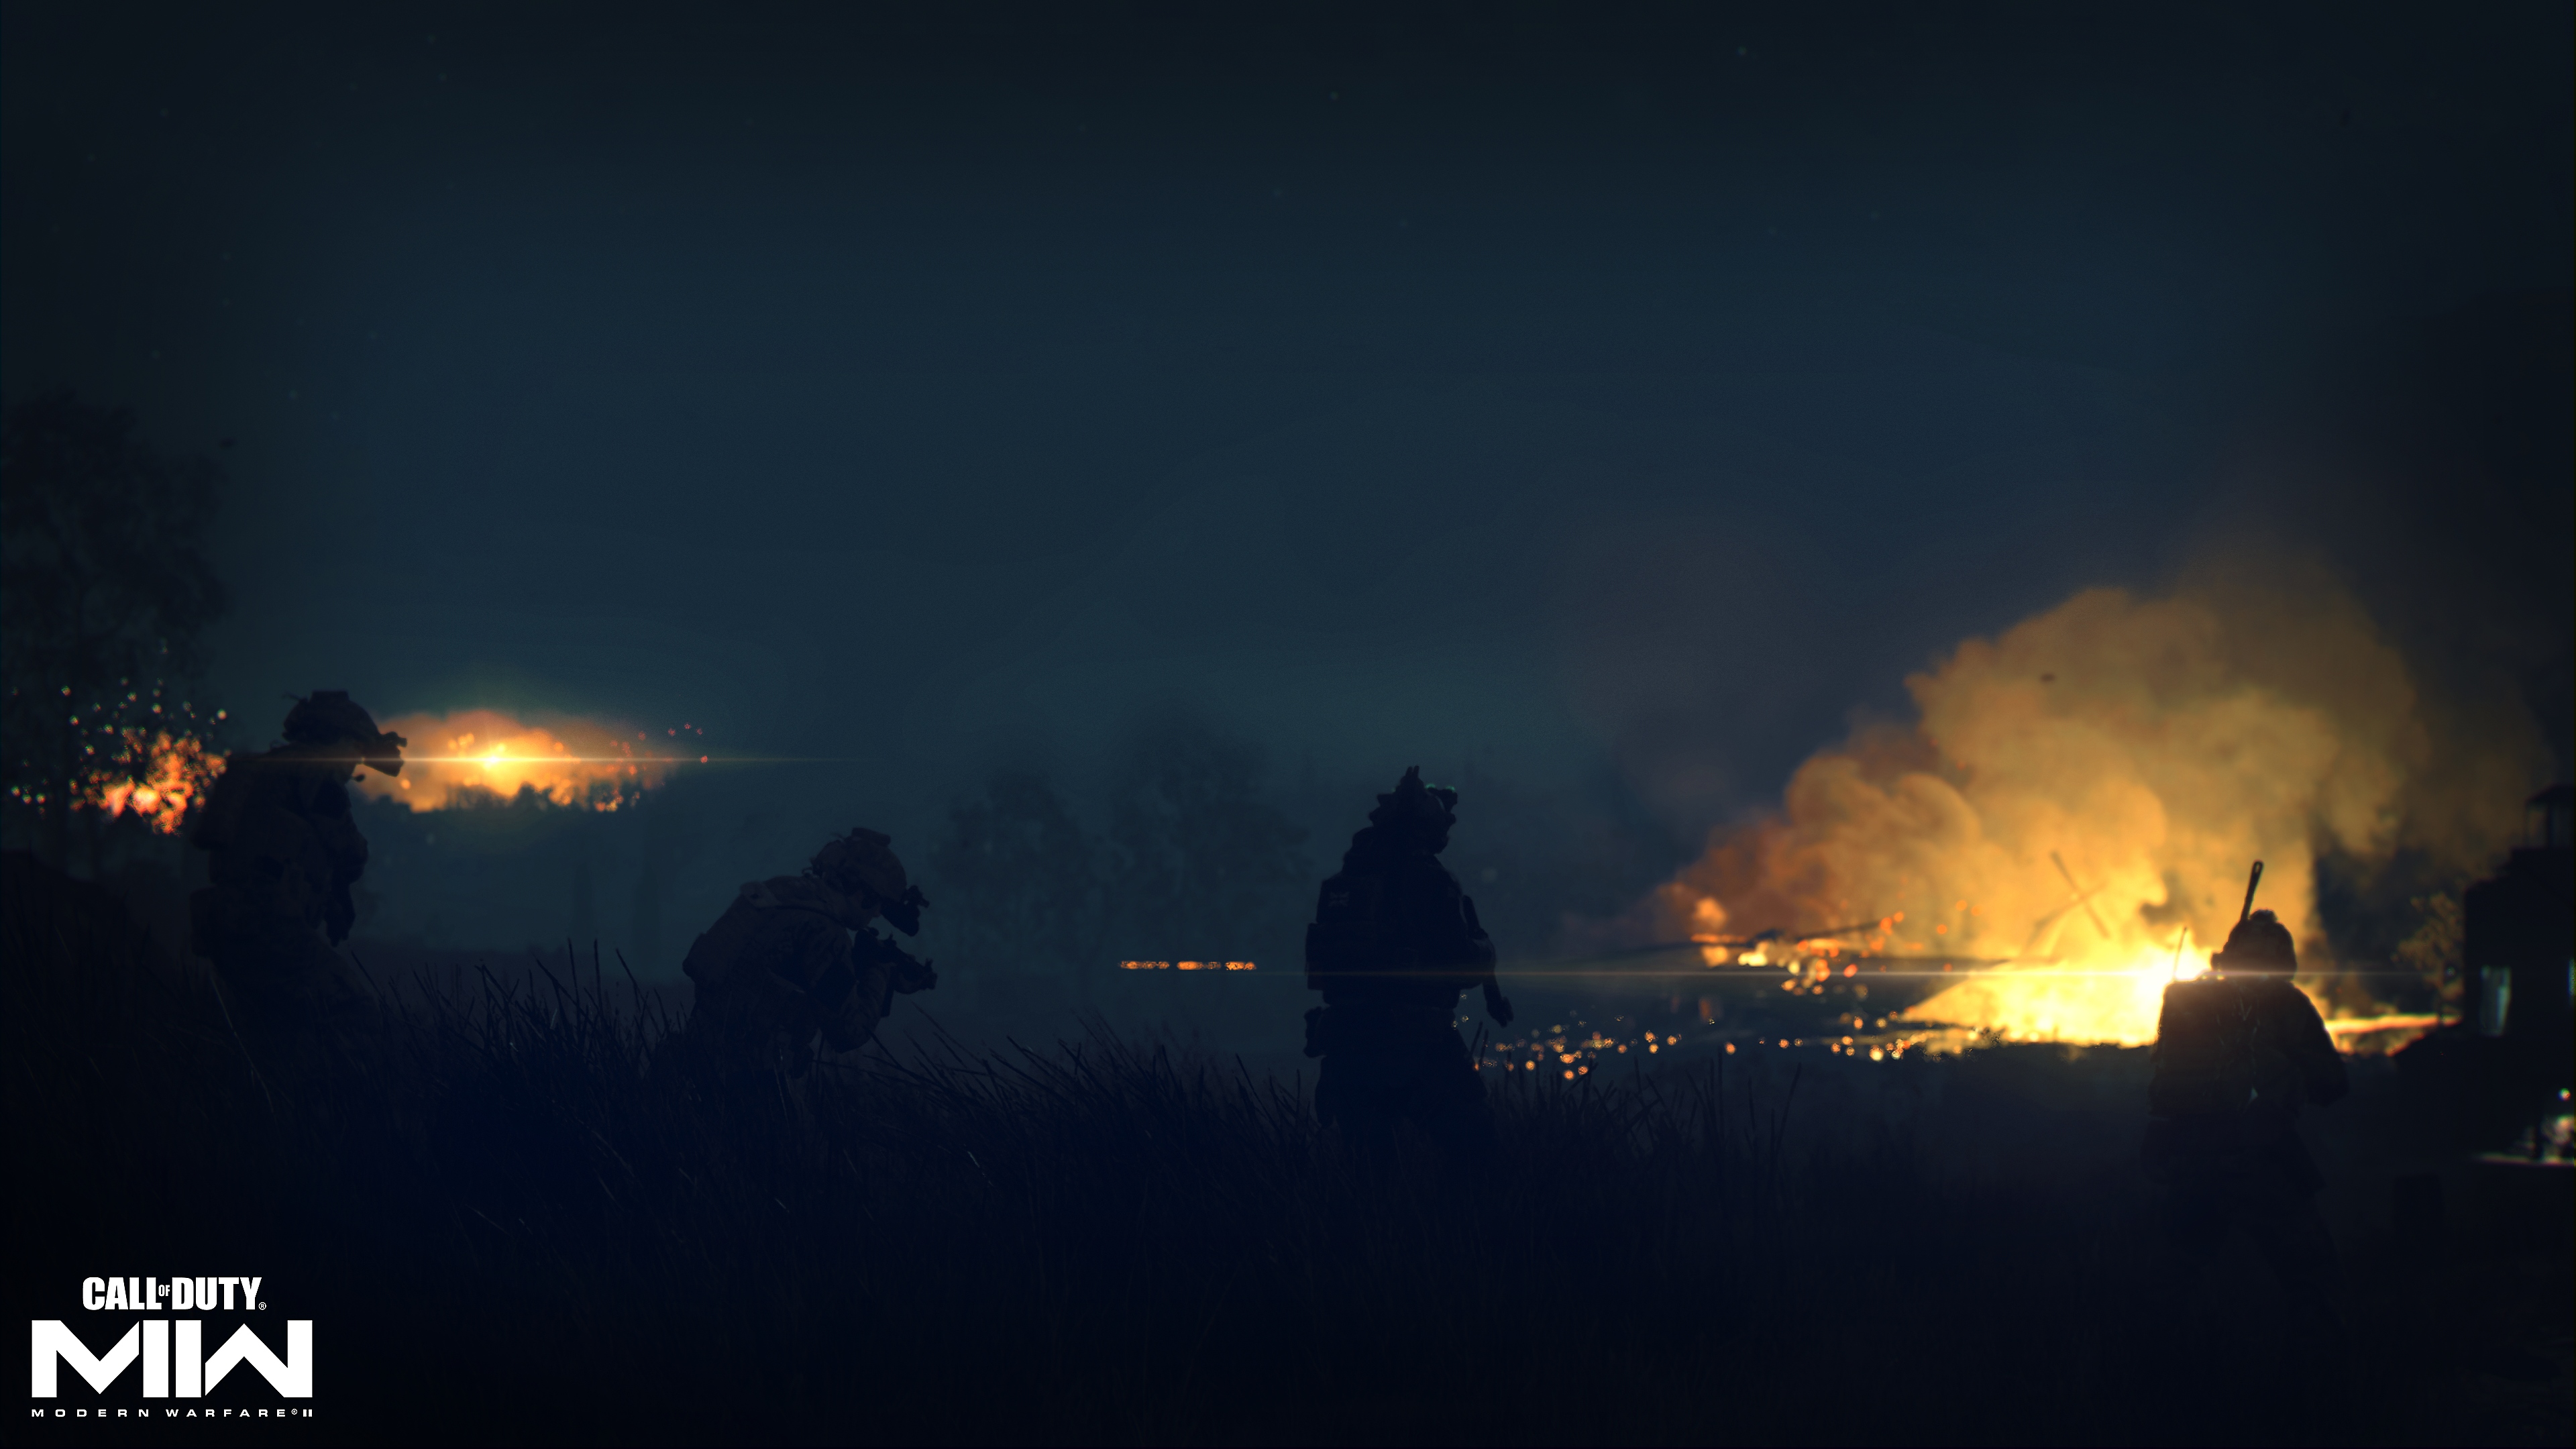 Call of Duty: Modern Warfare 2 2022 – skjermbilde av ild i det fjerne i et mørkt landskap